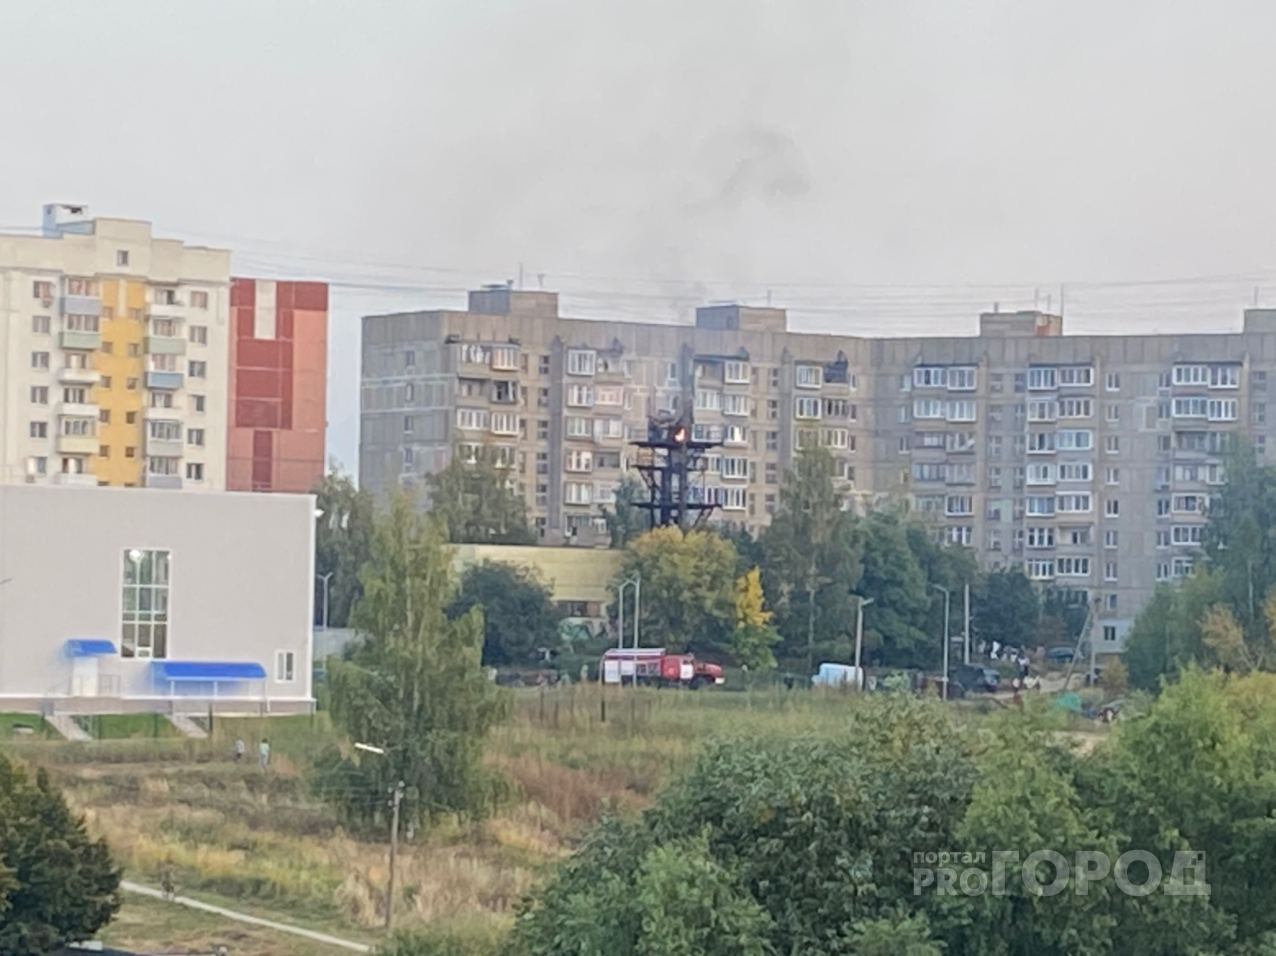 Не котельная, а вышка: подробности пожара в Дашково-Песочне